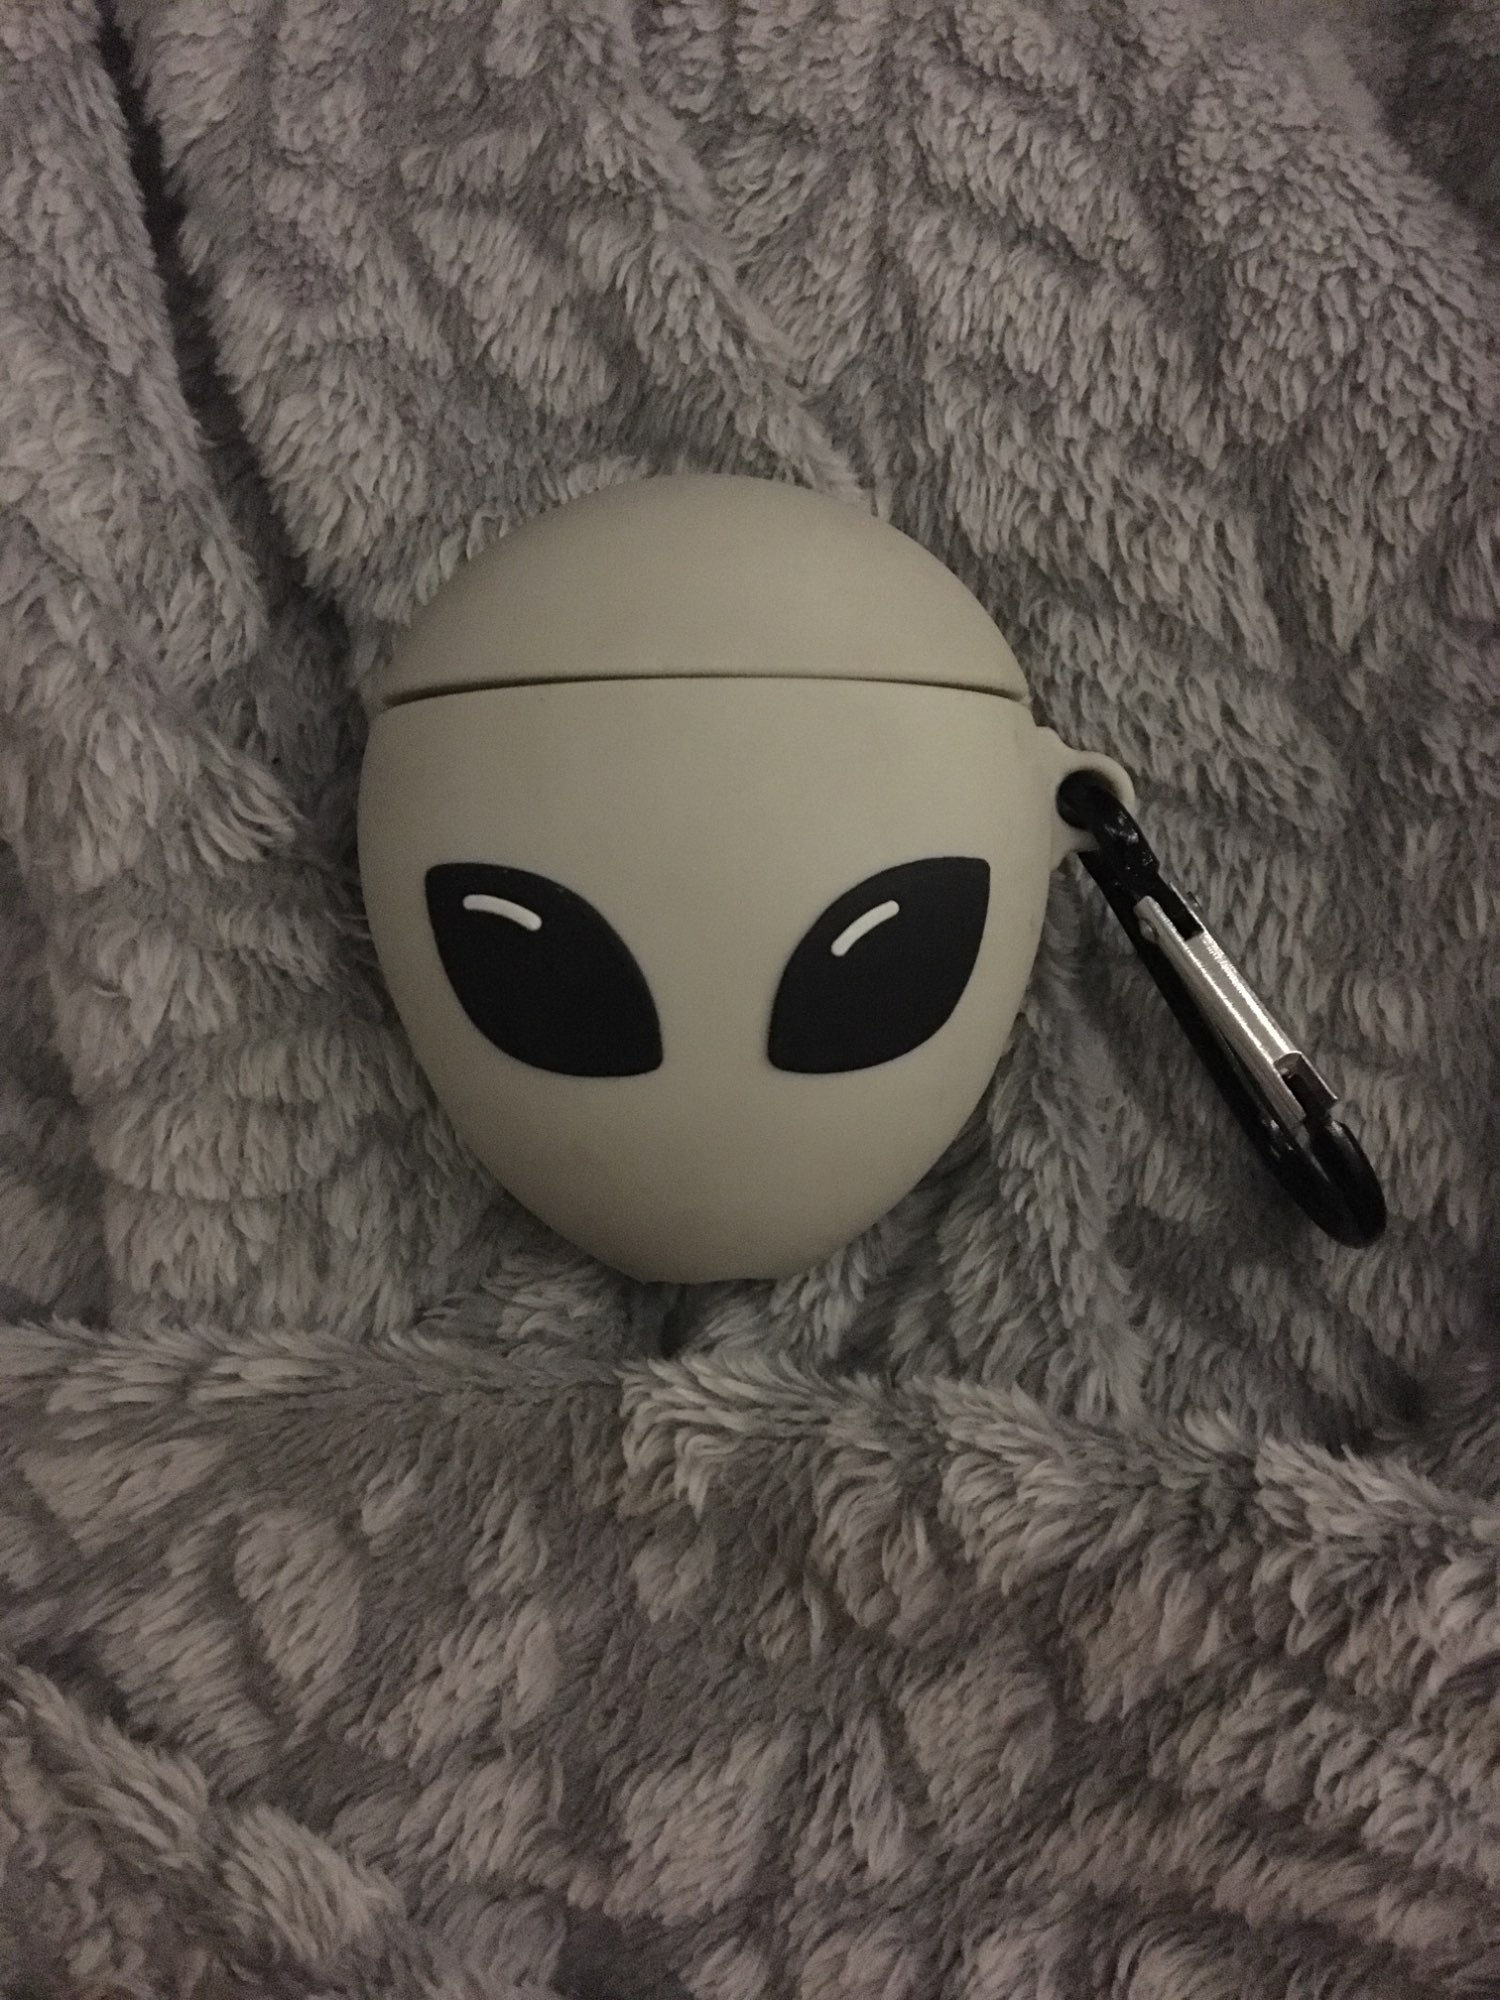 Alien AirPod Case